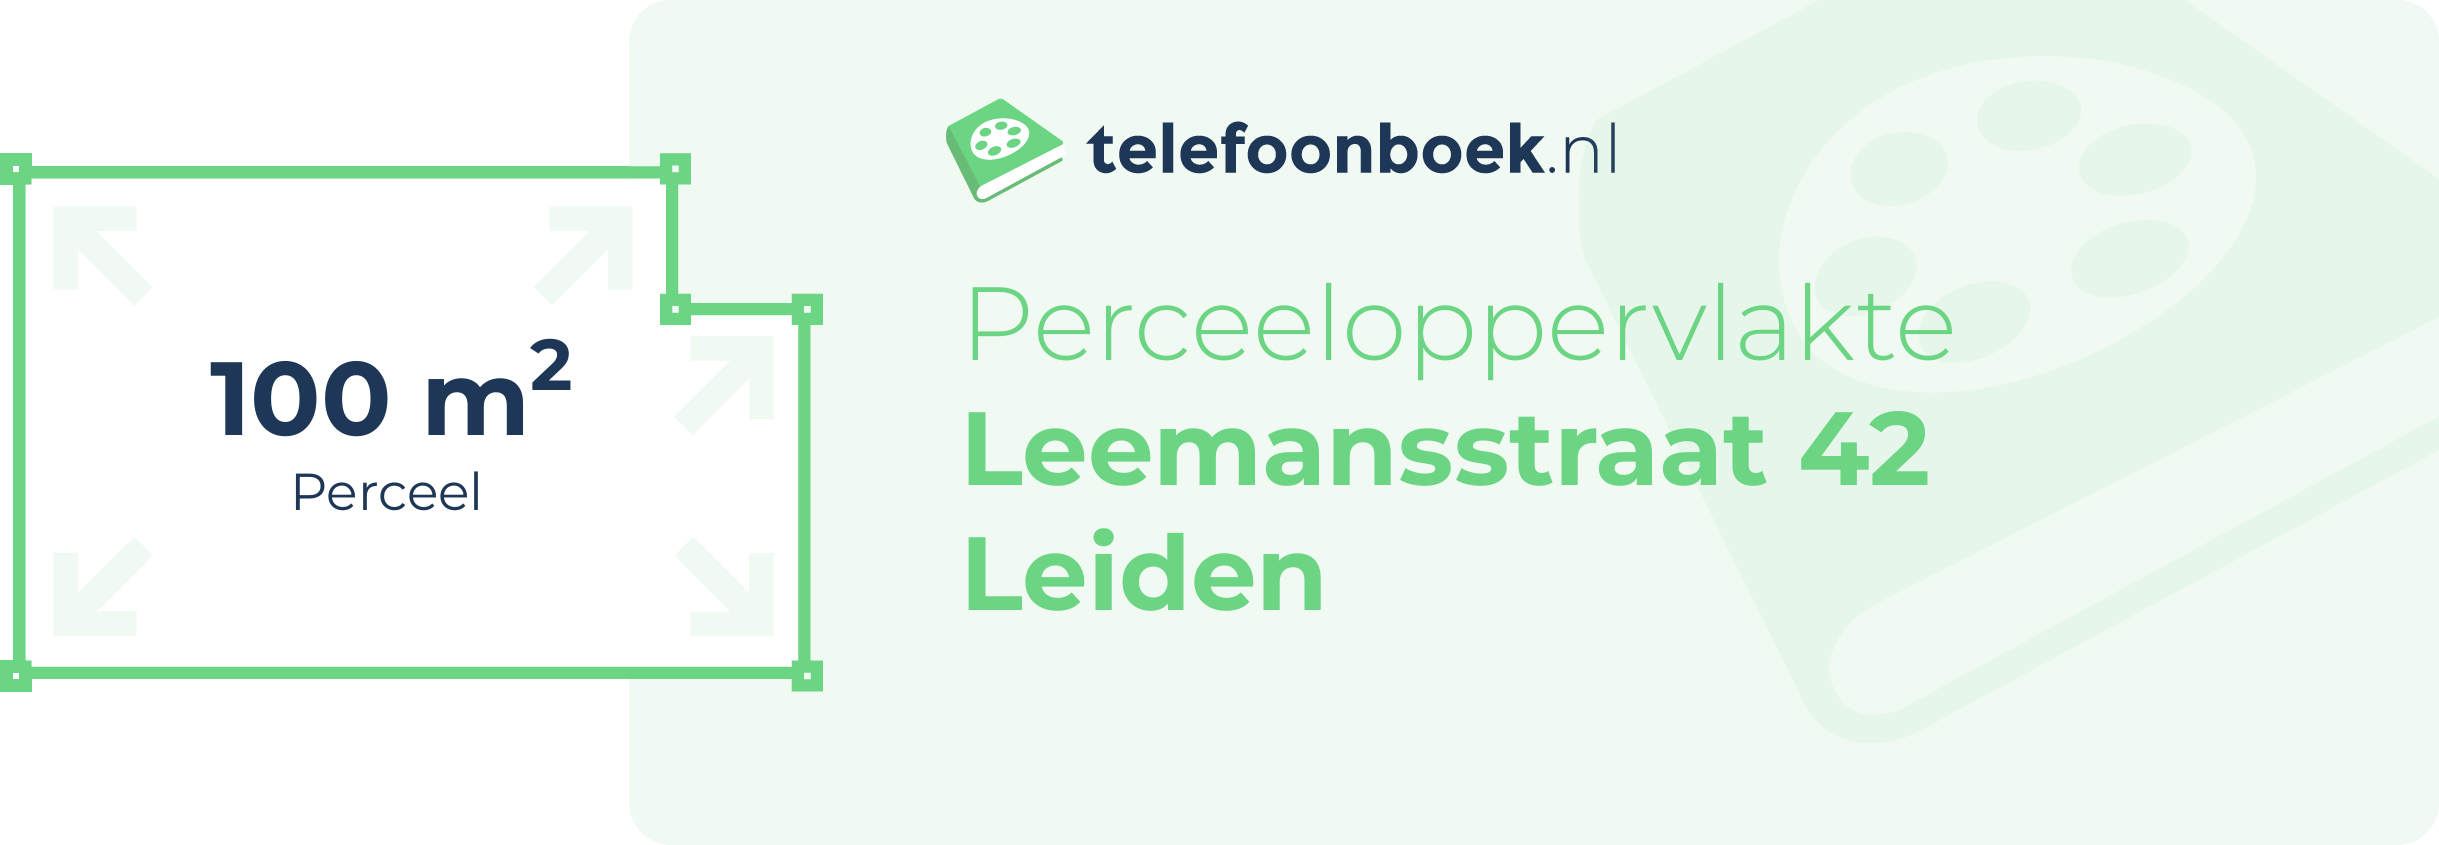 Perceeloppervlakte Leemansstraat 42 Leiden